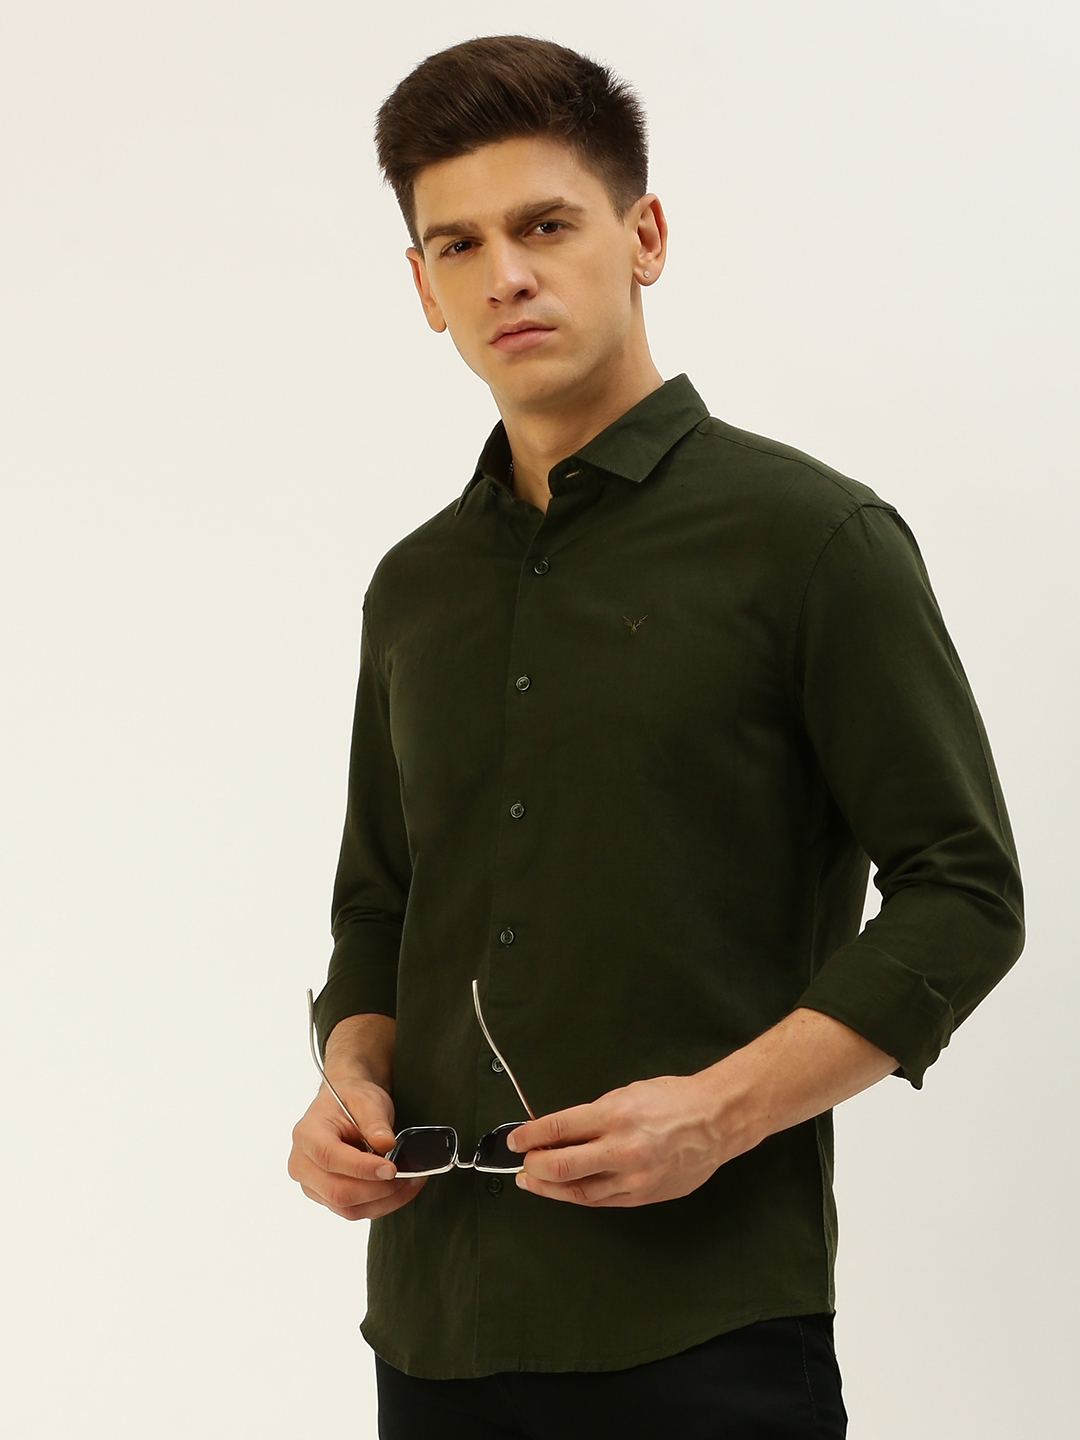 SHOWOFF Men's Spread Collar Solid Olive Regular Fit Shirt